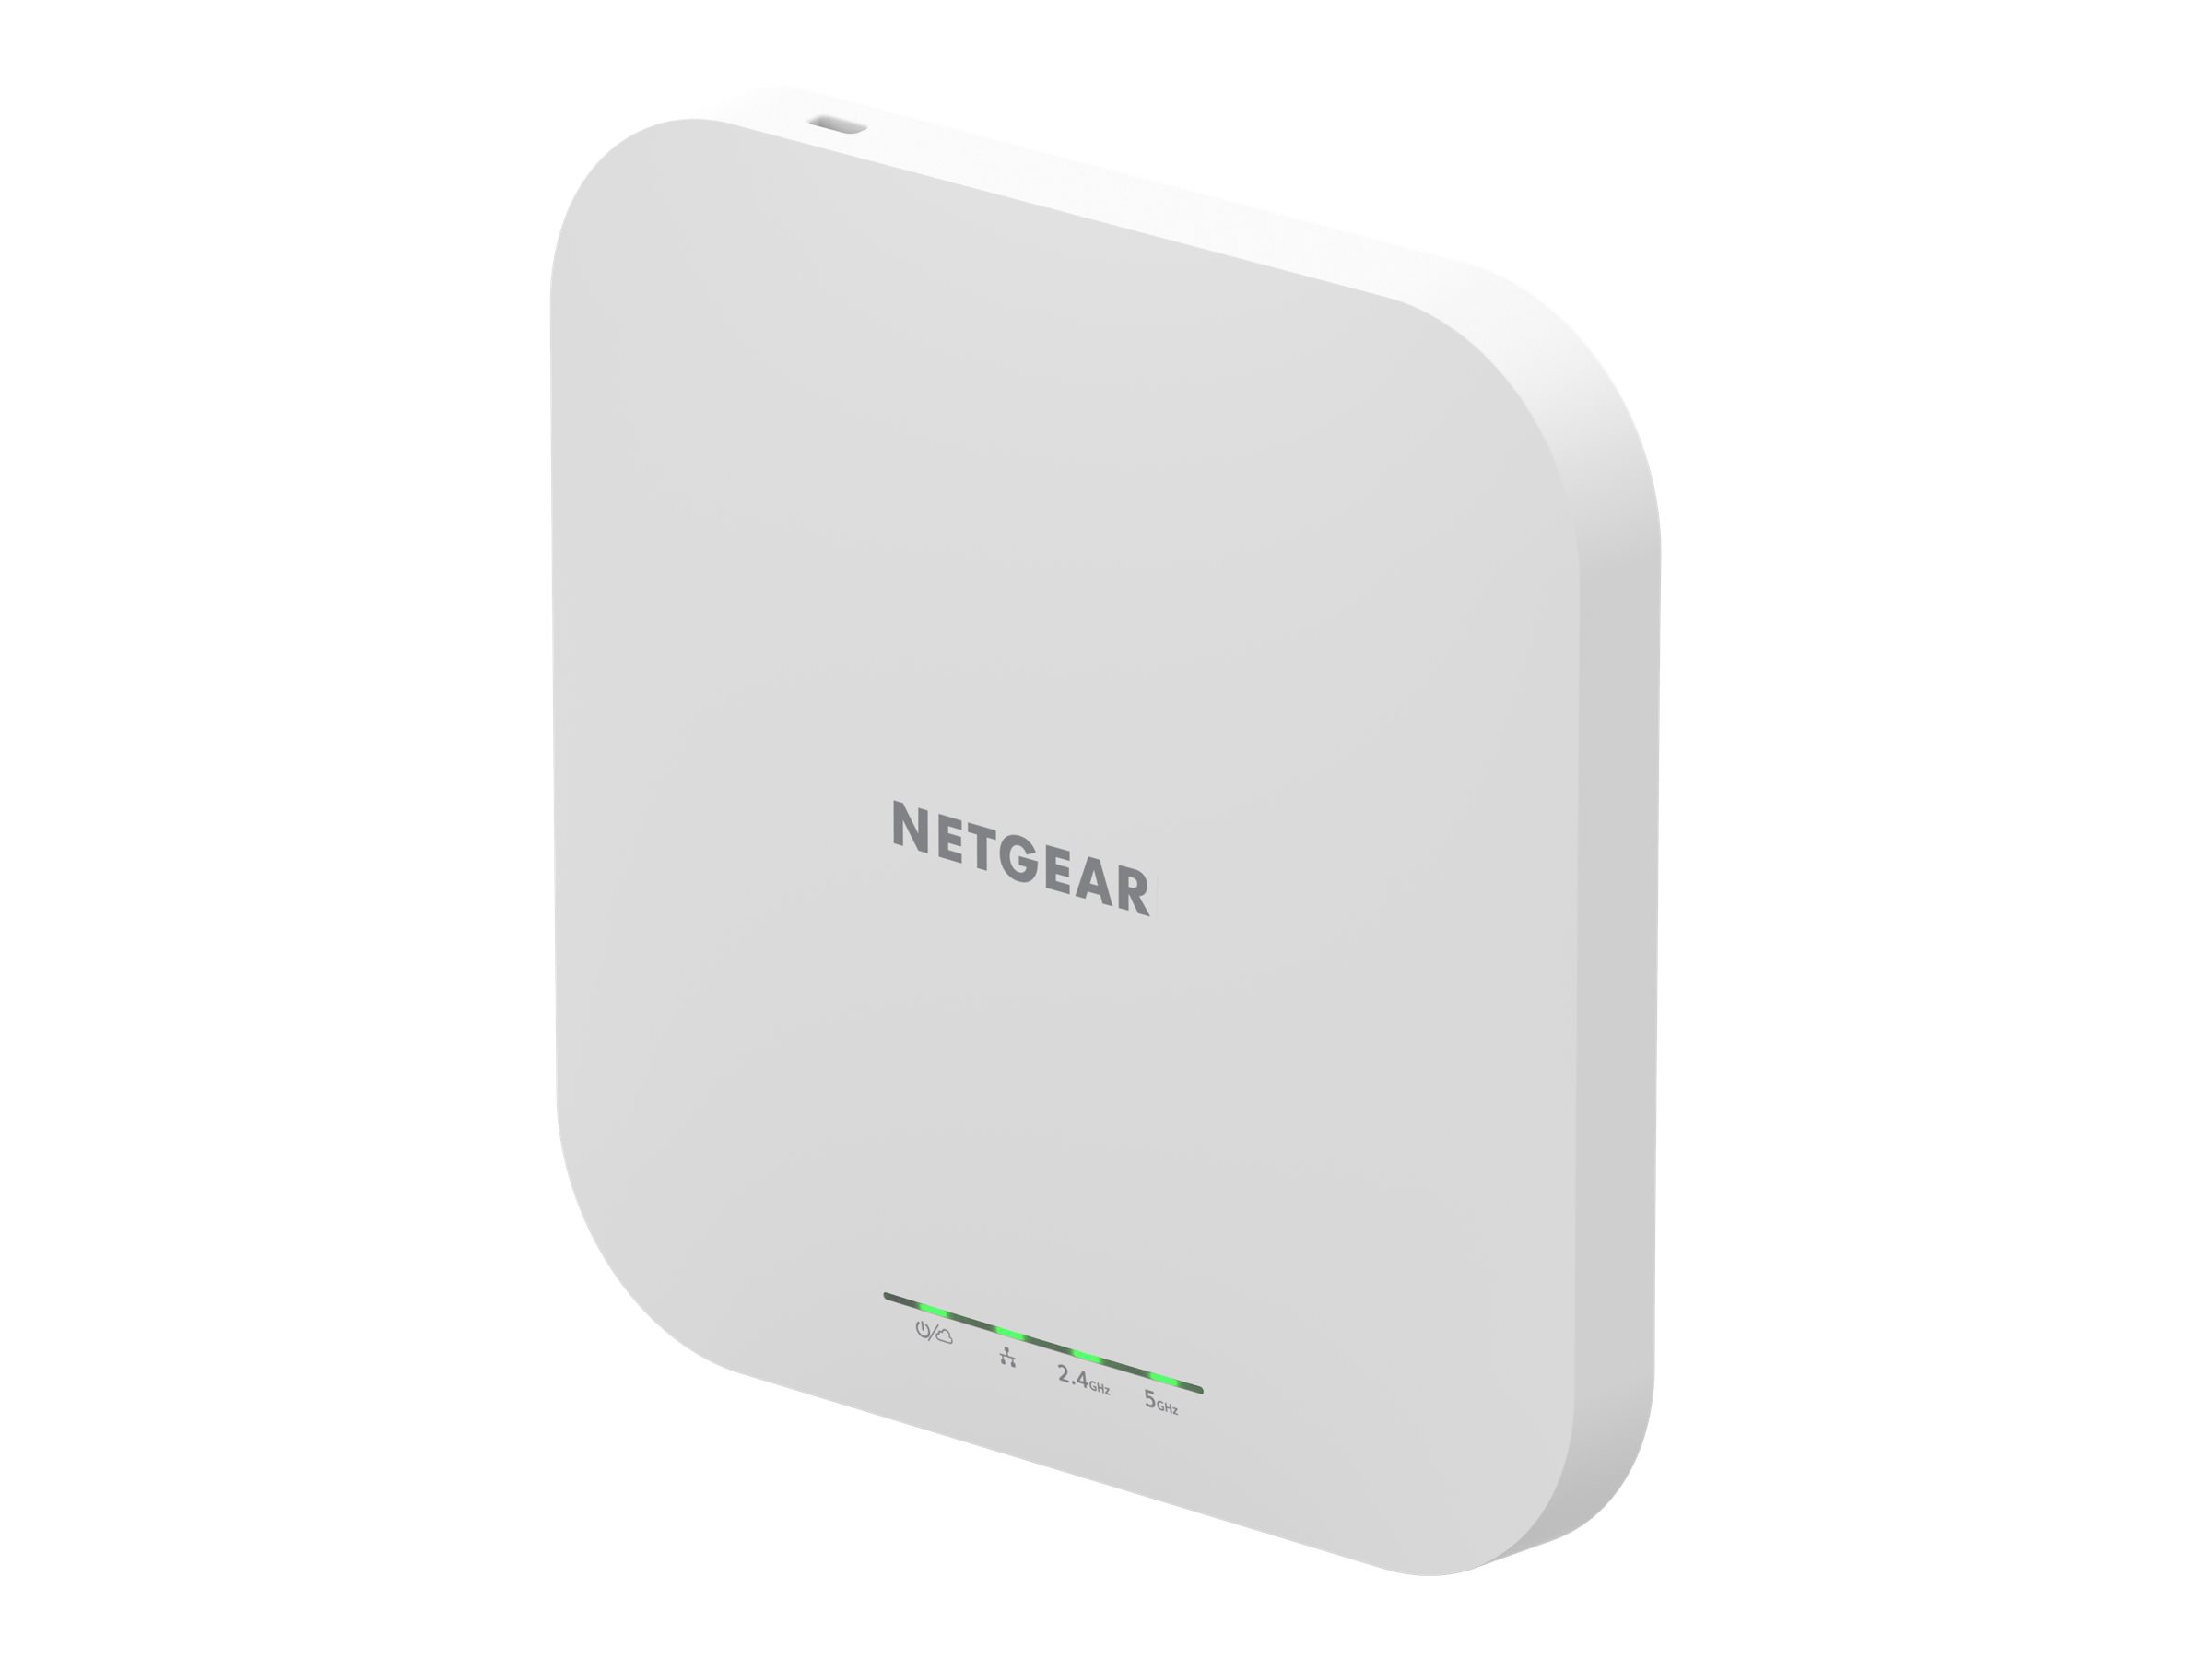 NETGEAR Insight WAX610 - Accesspoint - Wi-Fi 6 - 2.4 GHz, 5 GHz - Cloud-verwaltet